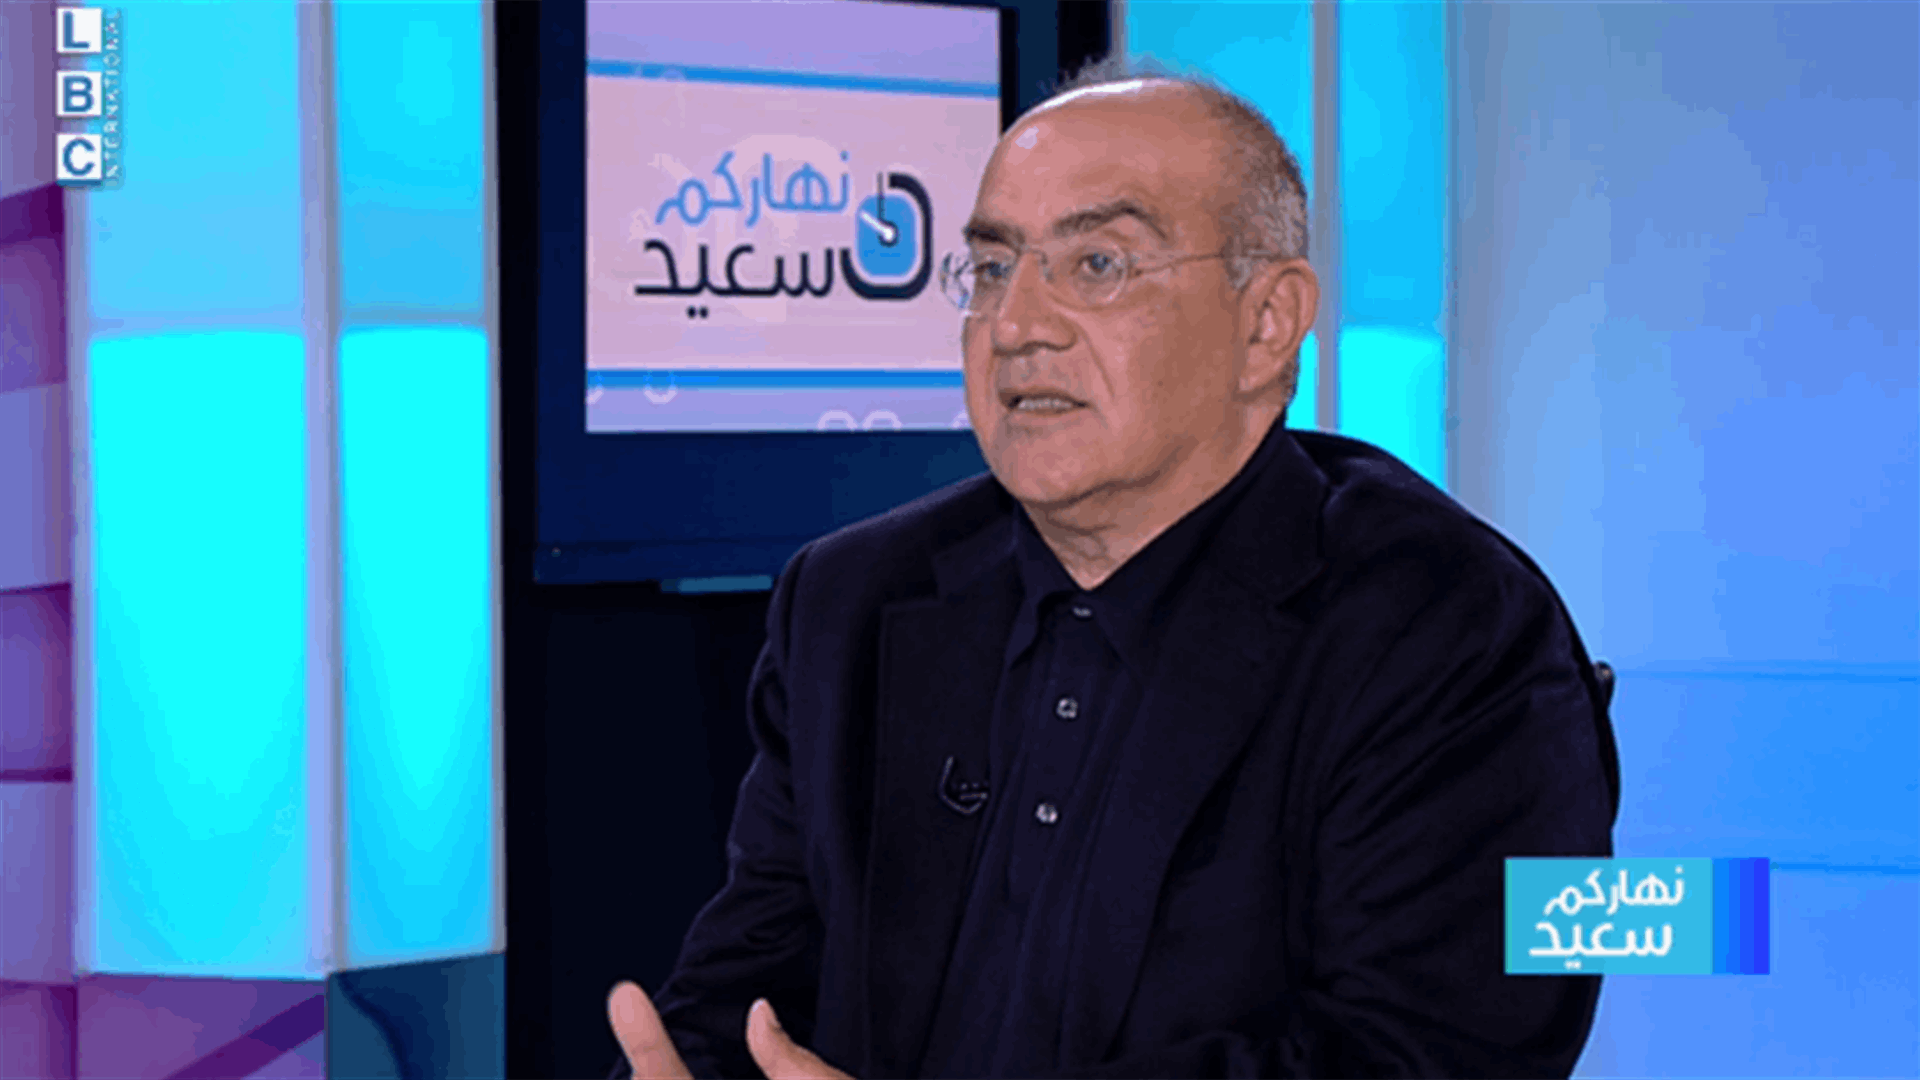 سعيد للـLBCI: المؤسسات الحزبية السياسية مشلولة ولبنان مقبل على فوضى